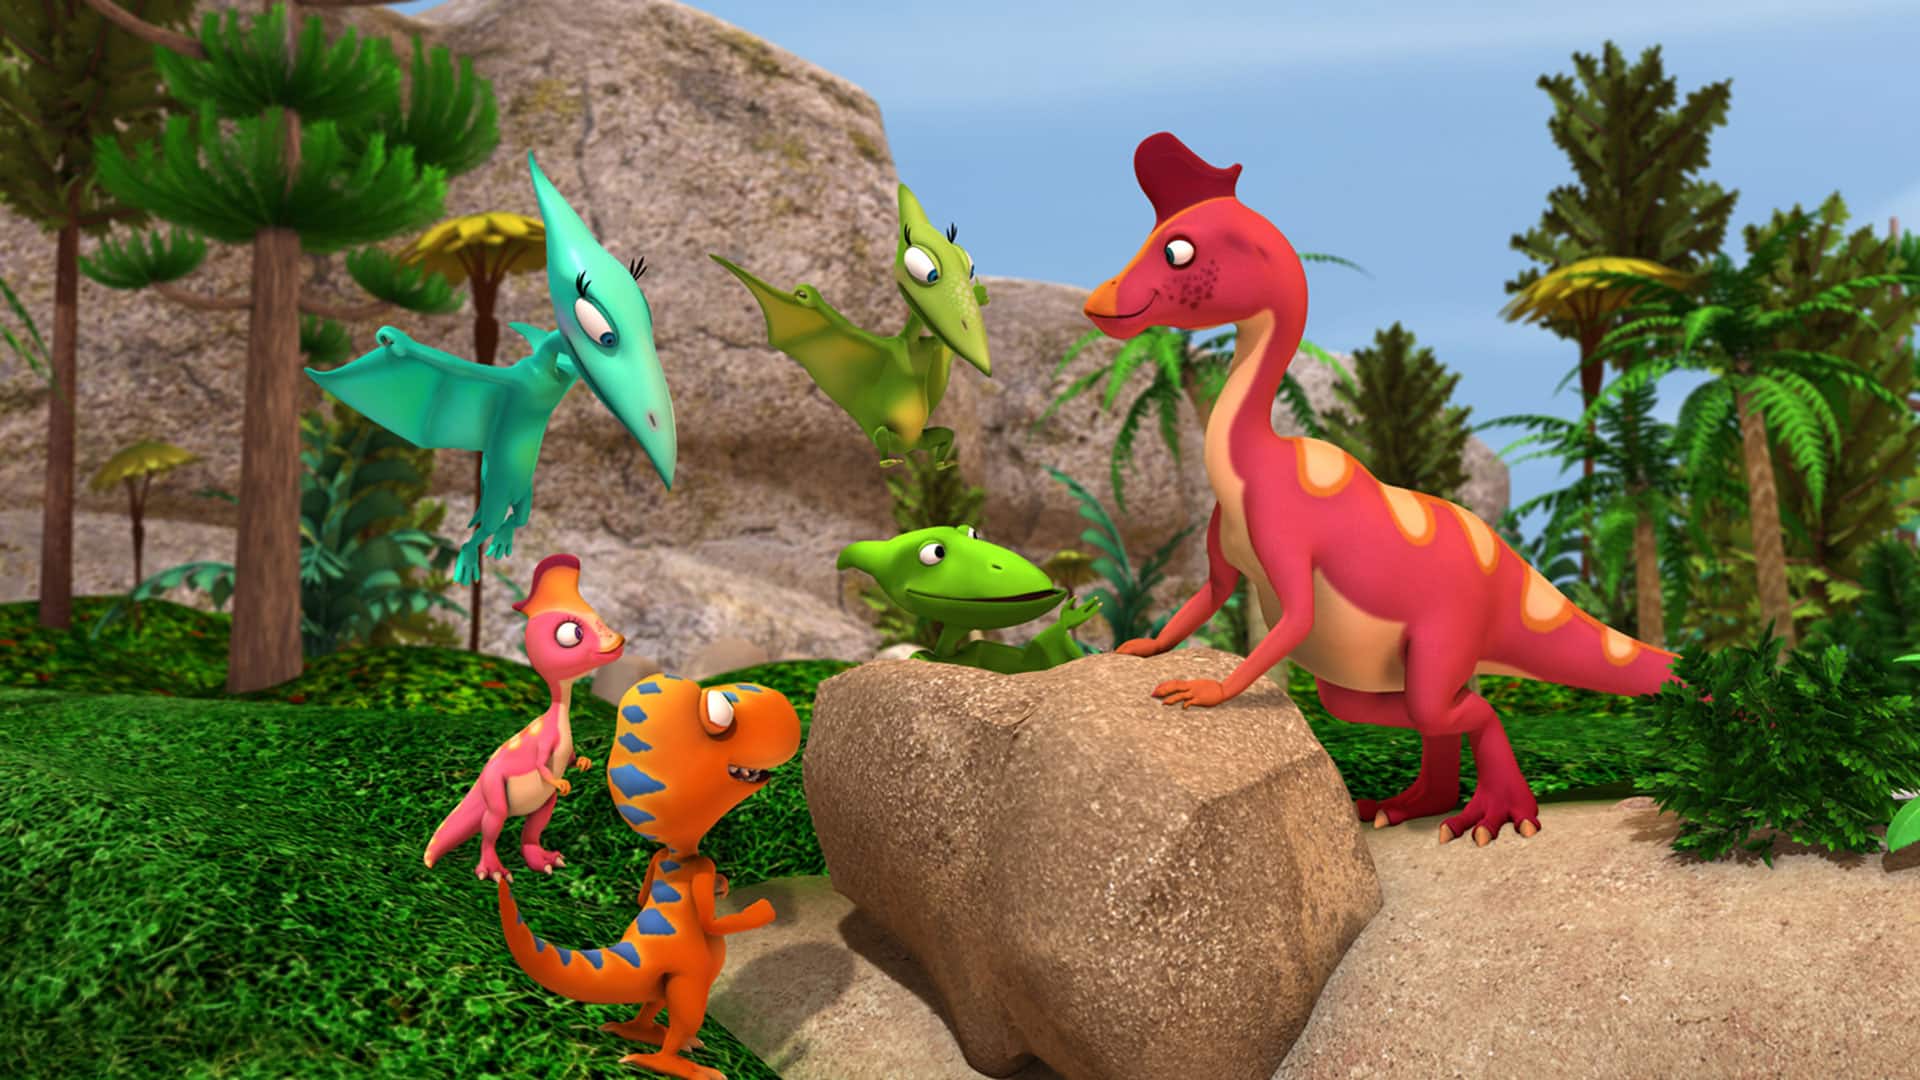 Фото динозавров из мультика